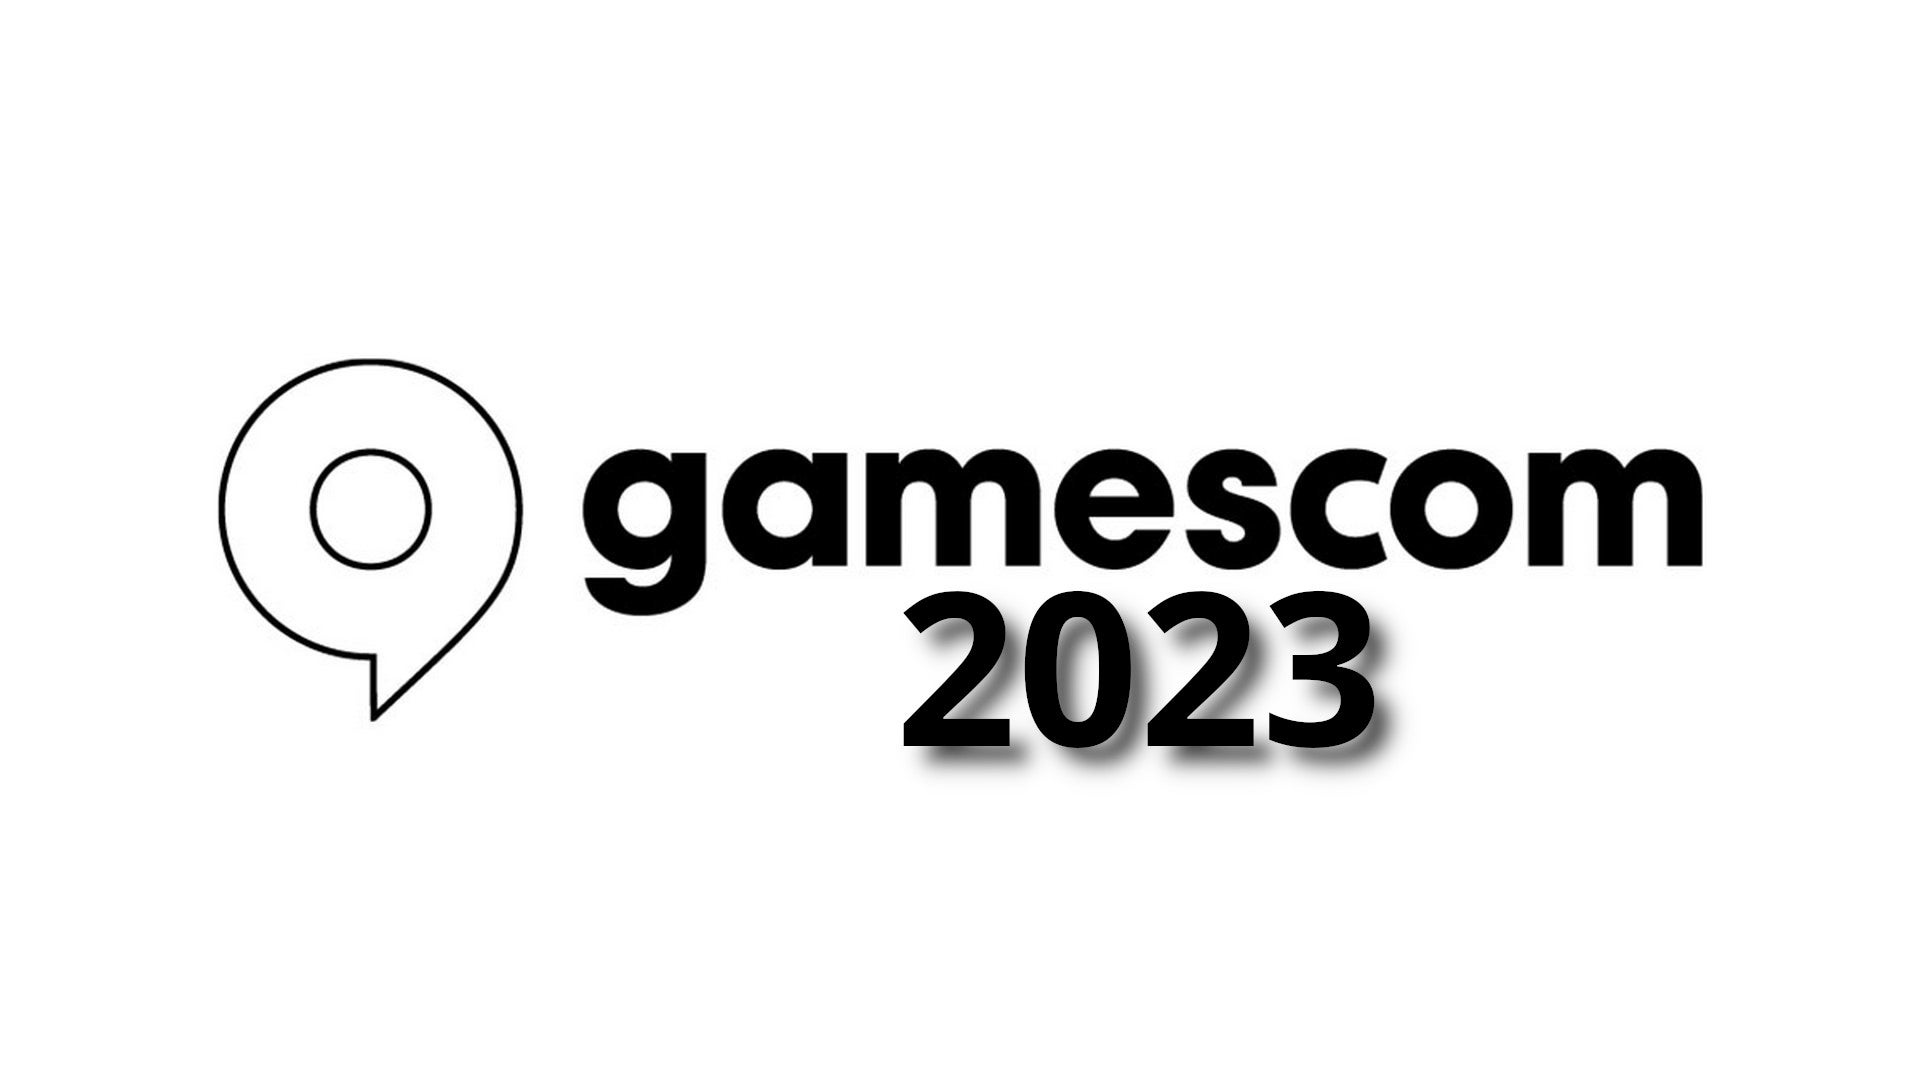 Bilder zu Die gamescom 2023 hat bereits einen Termin